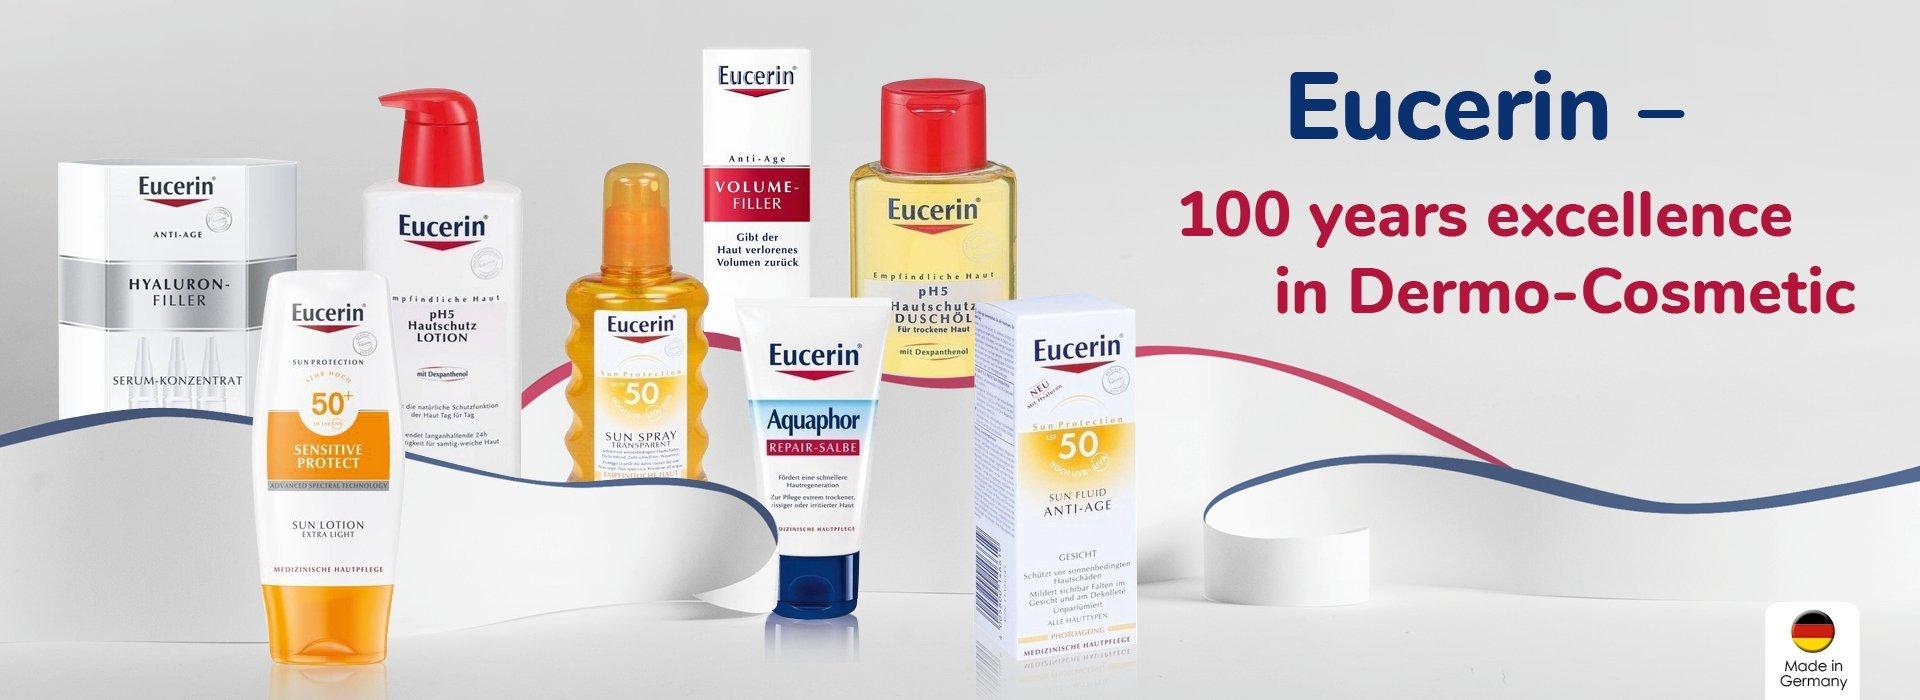 Eucerin - Thương hiệu dược mỹ phẩm được nhiều người tin dùng